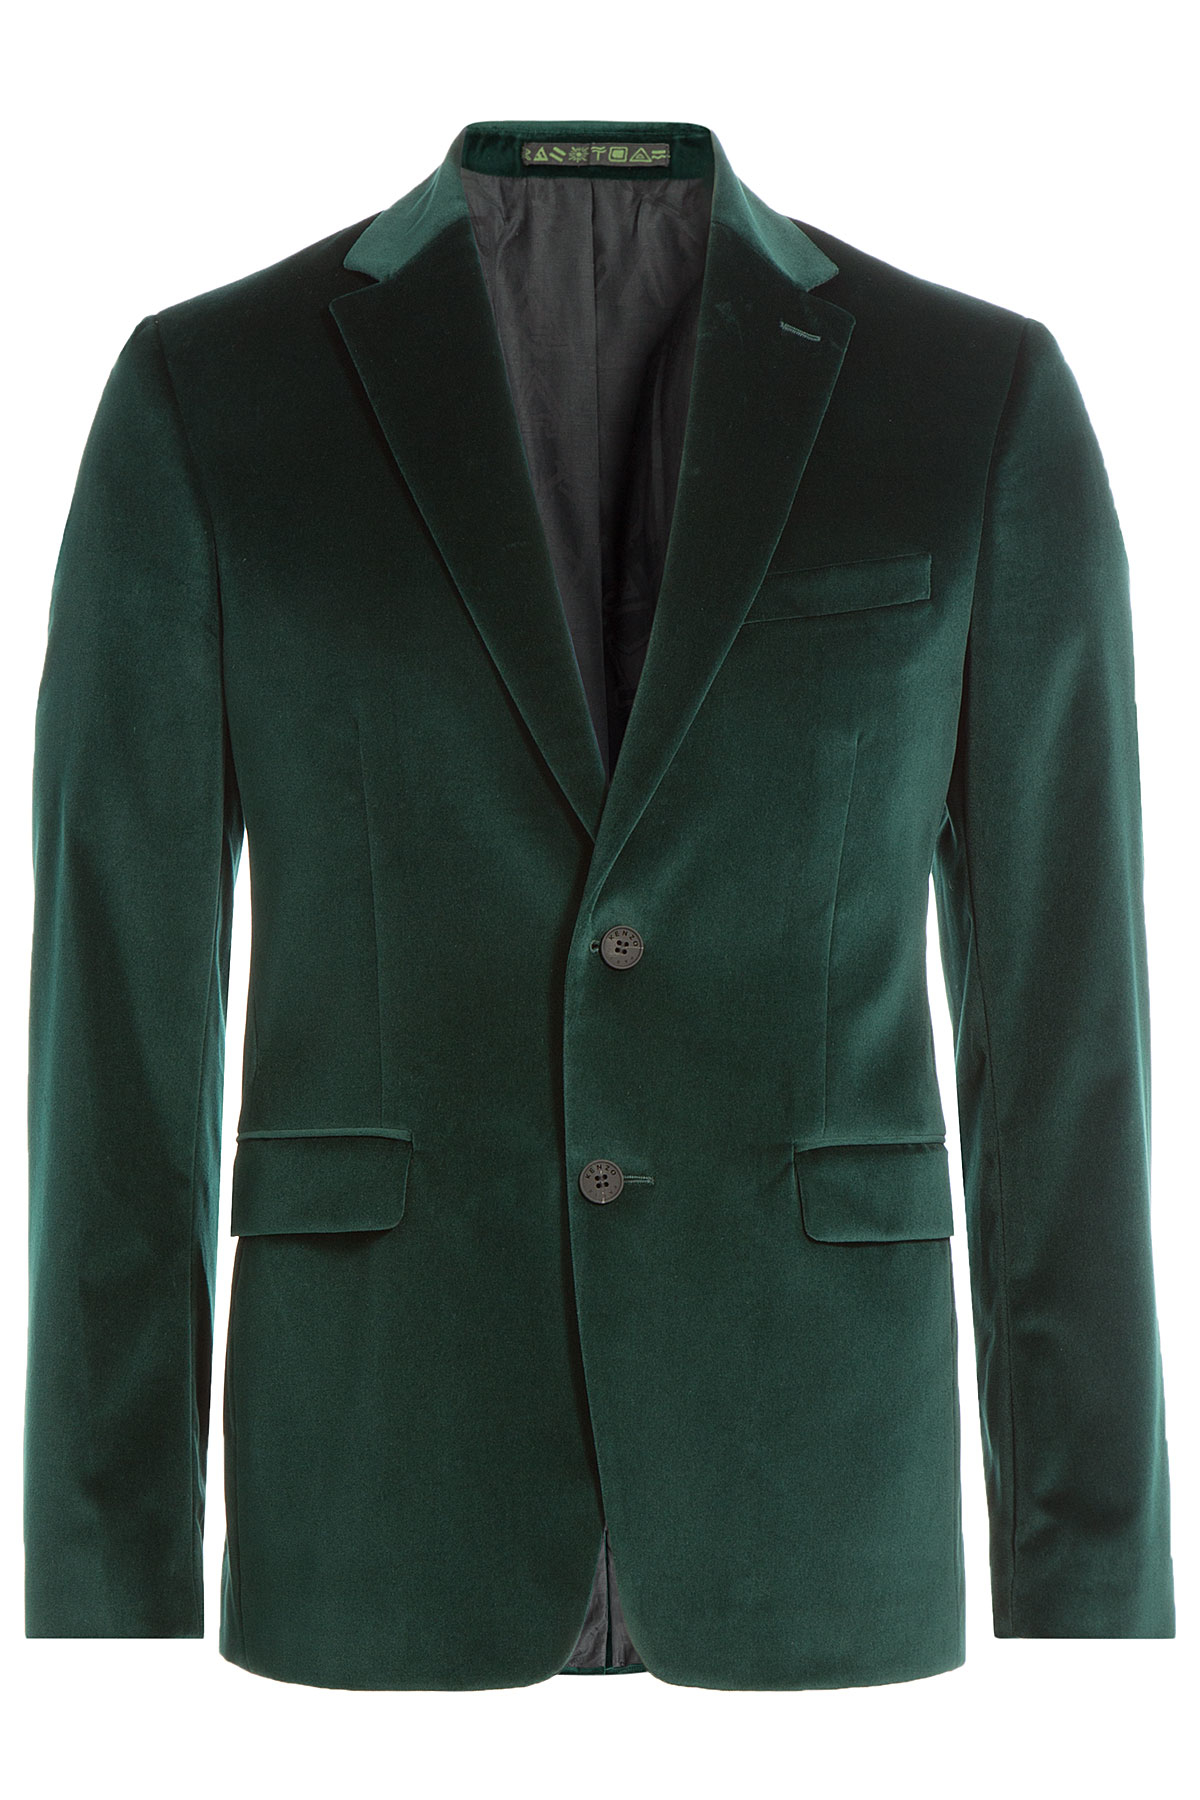 Lyst - Kenzo Velvet Blazer in Green for Men